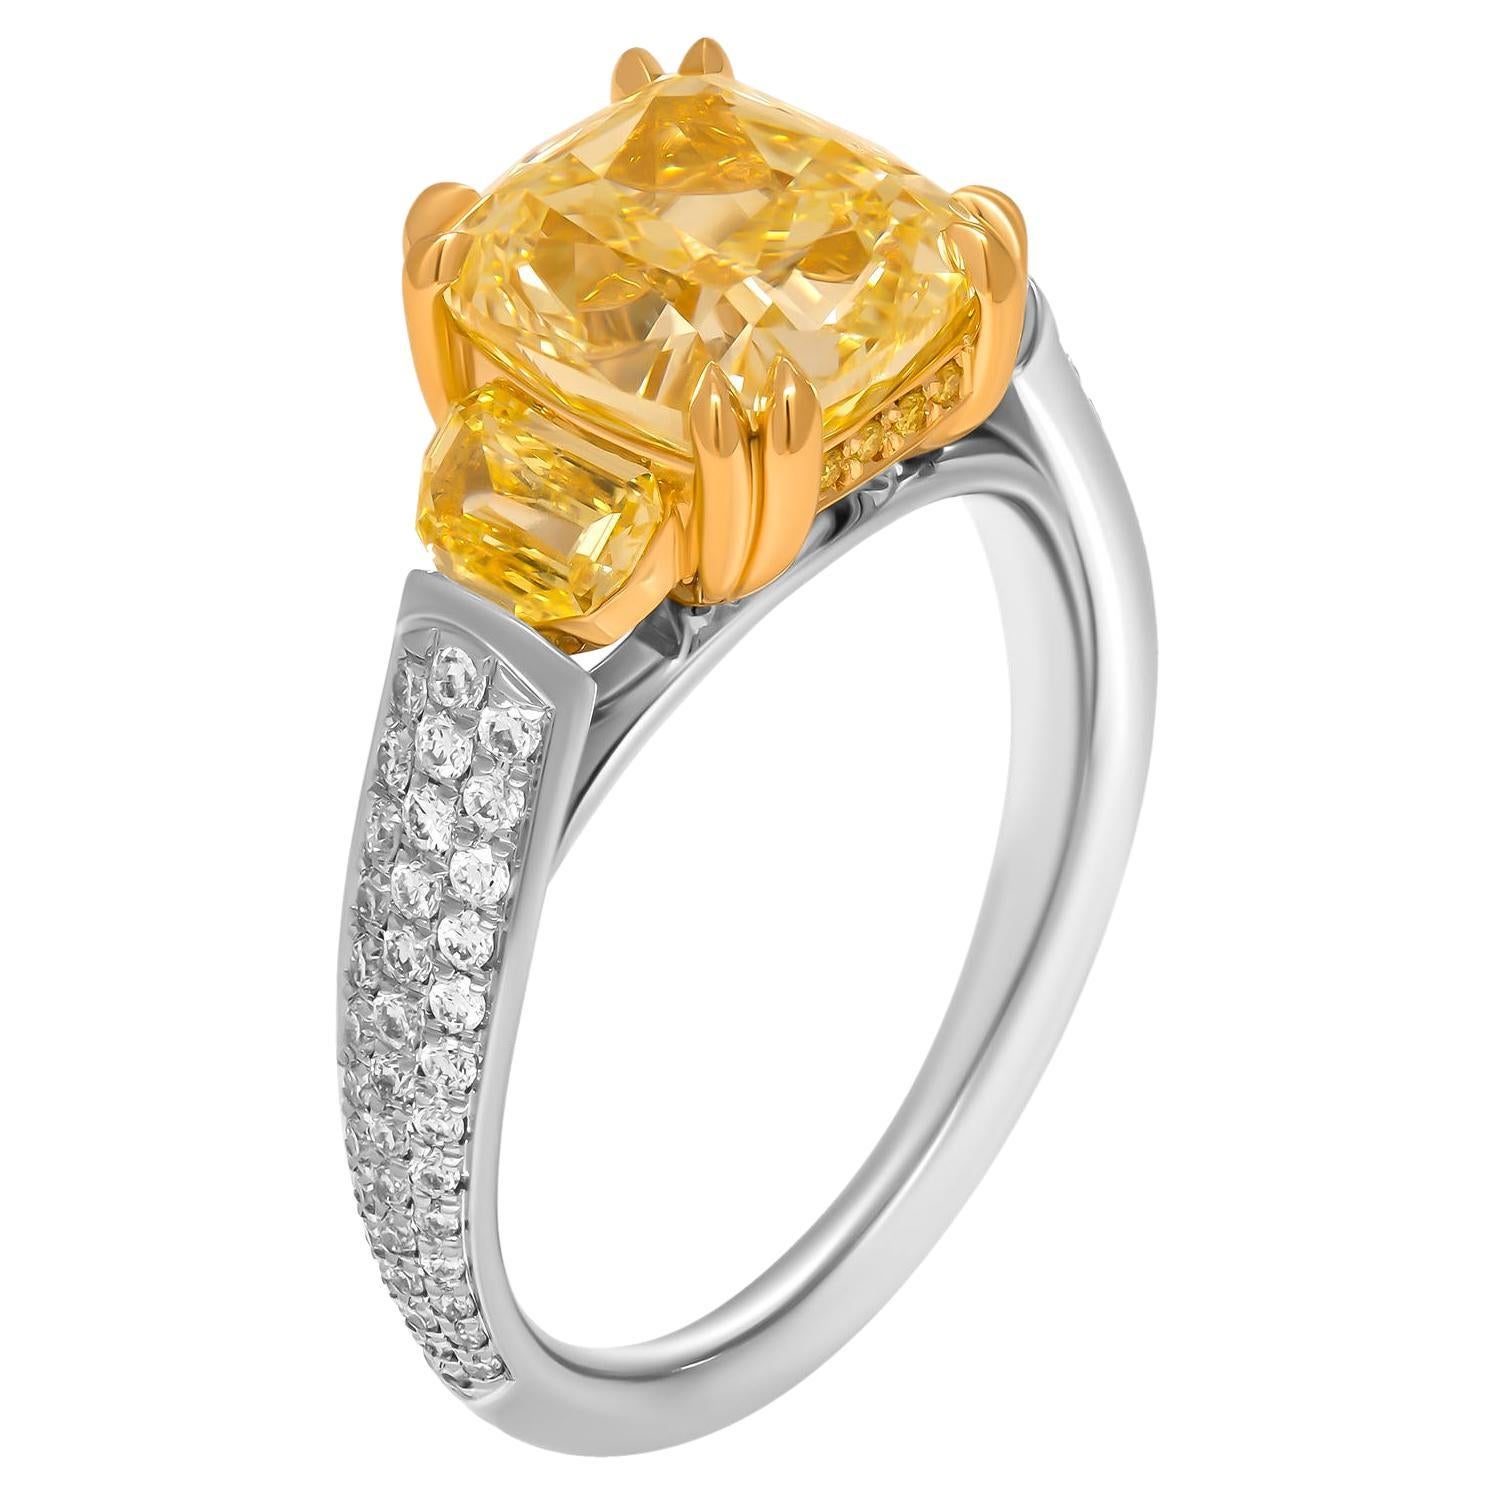 GIA-zertifizierter 3-Stein-Ring mit 4,04 Karat ausgefallenem gelbem VVS2-Kissenschliff